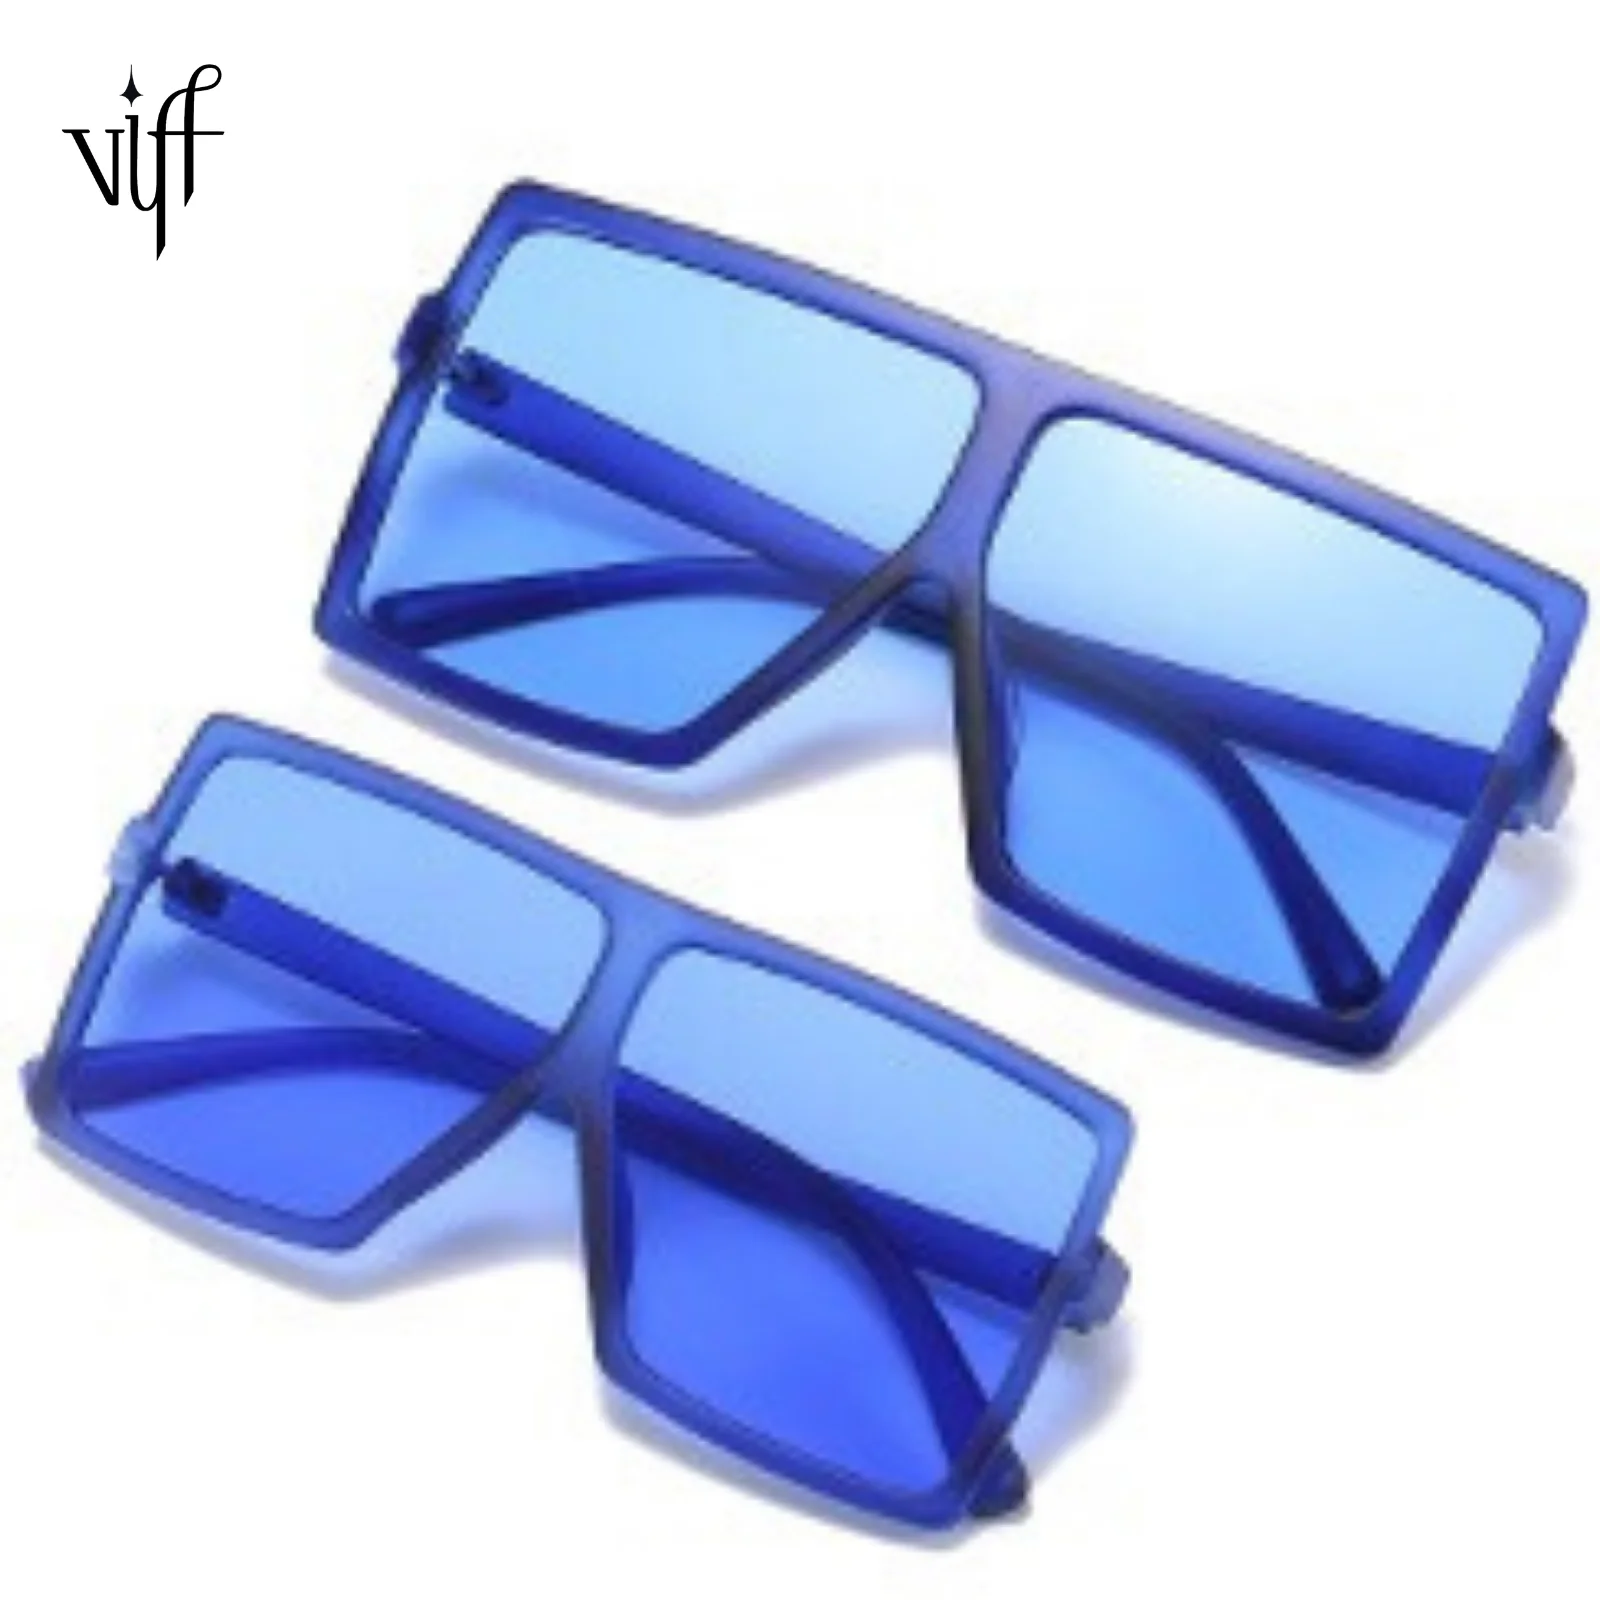 

VIFF HP20427 Multi Color Shades Hot Seller Gafas Del Sol Sun Glasses Mommy Me Fashion Square Oversized Sunglasses 2021